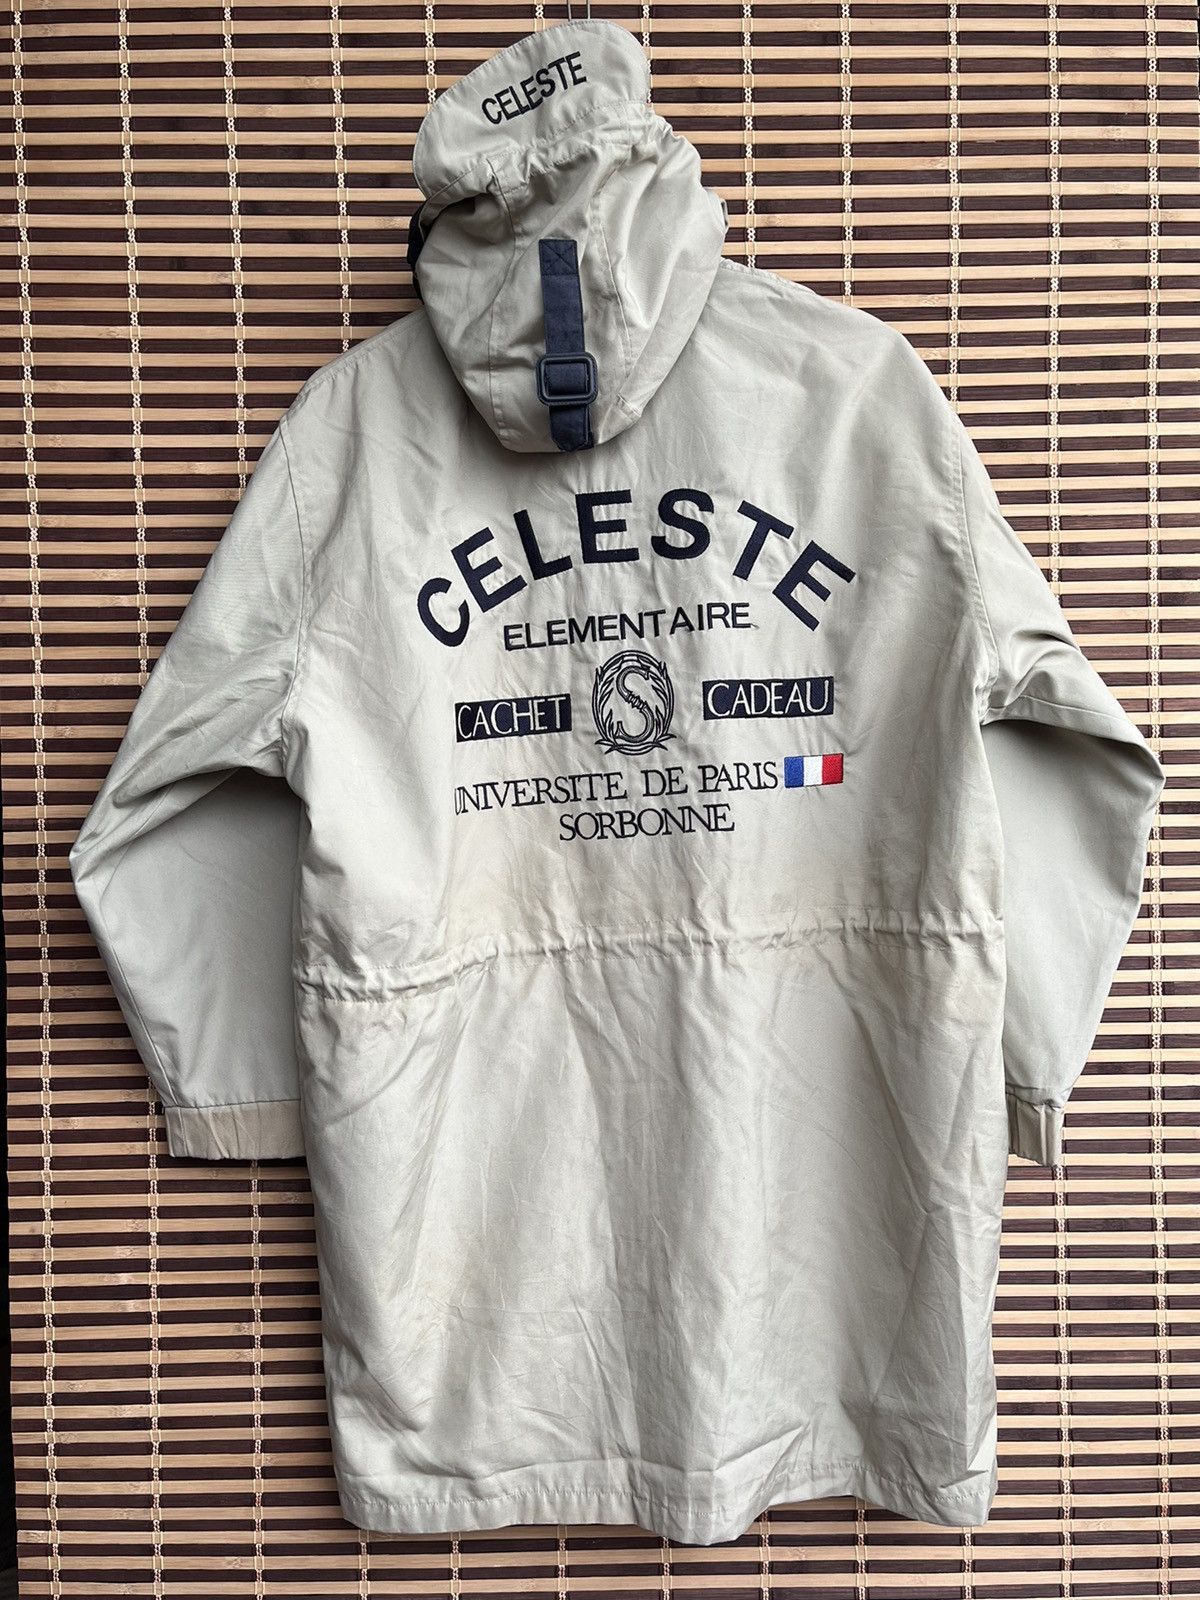 Vintage Celeste Universite De Paris Sorbonne Parka Jacket - 23